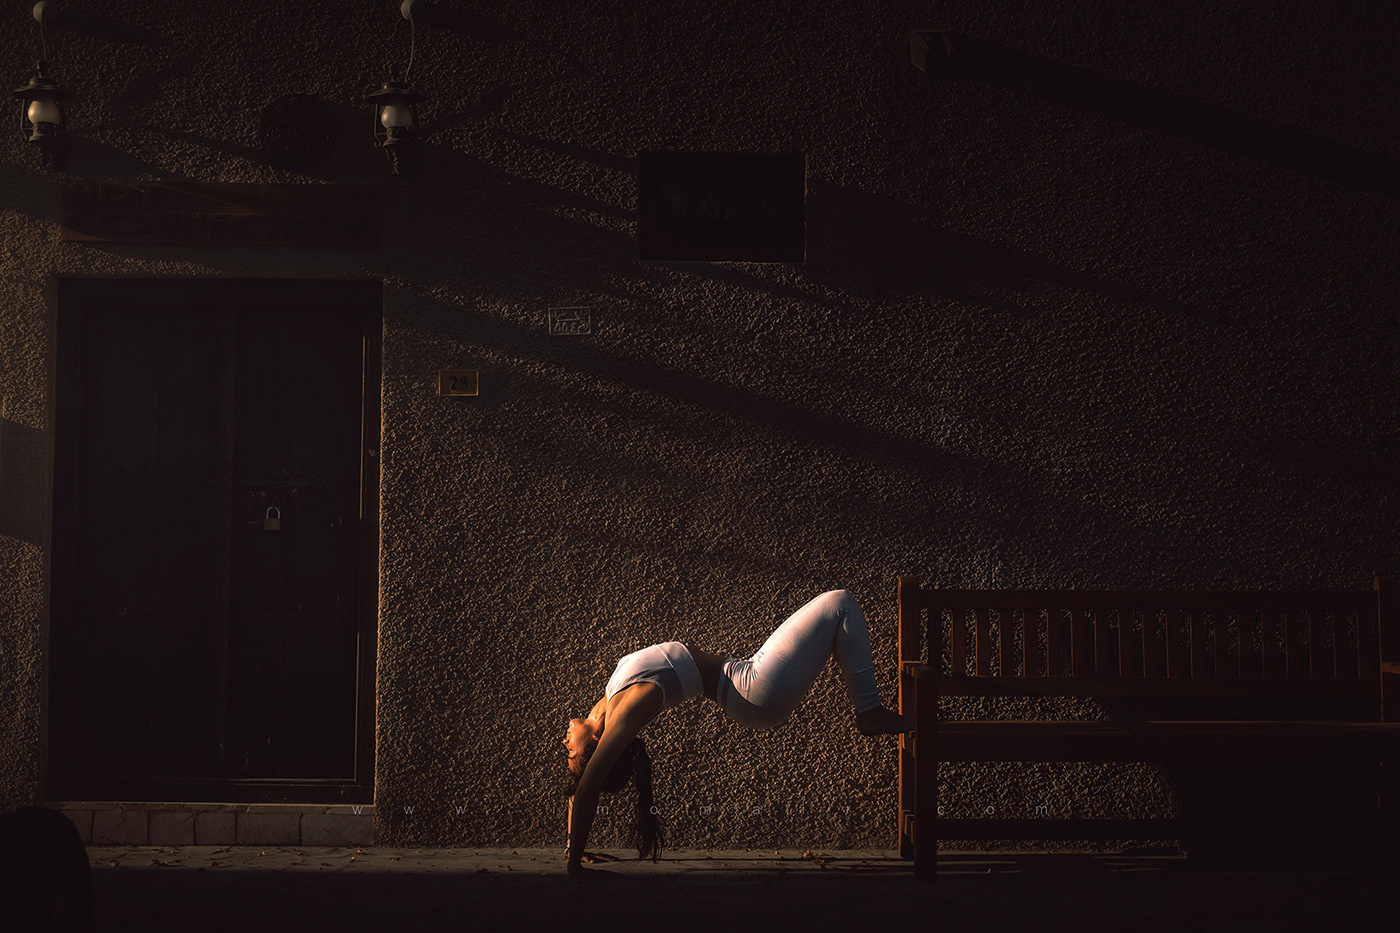 Adobe Portfolio yogi Yoga dubai UAE oldtown Bastakiya fujifilm FUJIXT2 photoshoot fitness souq